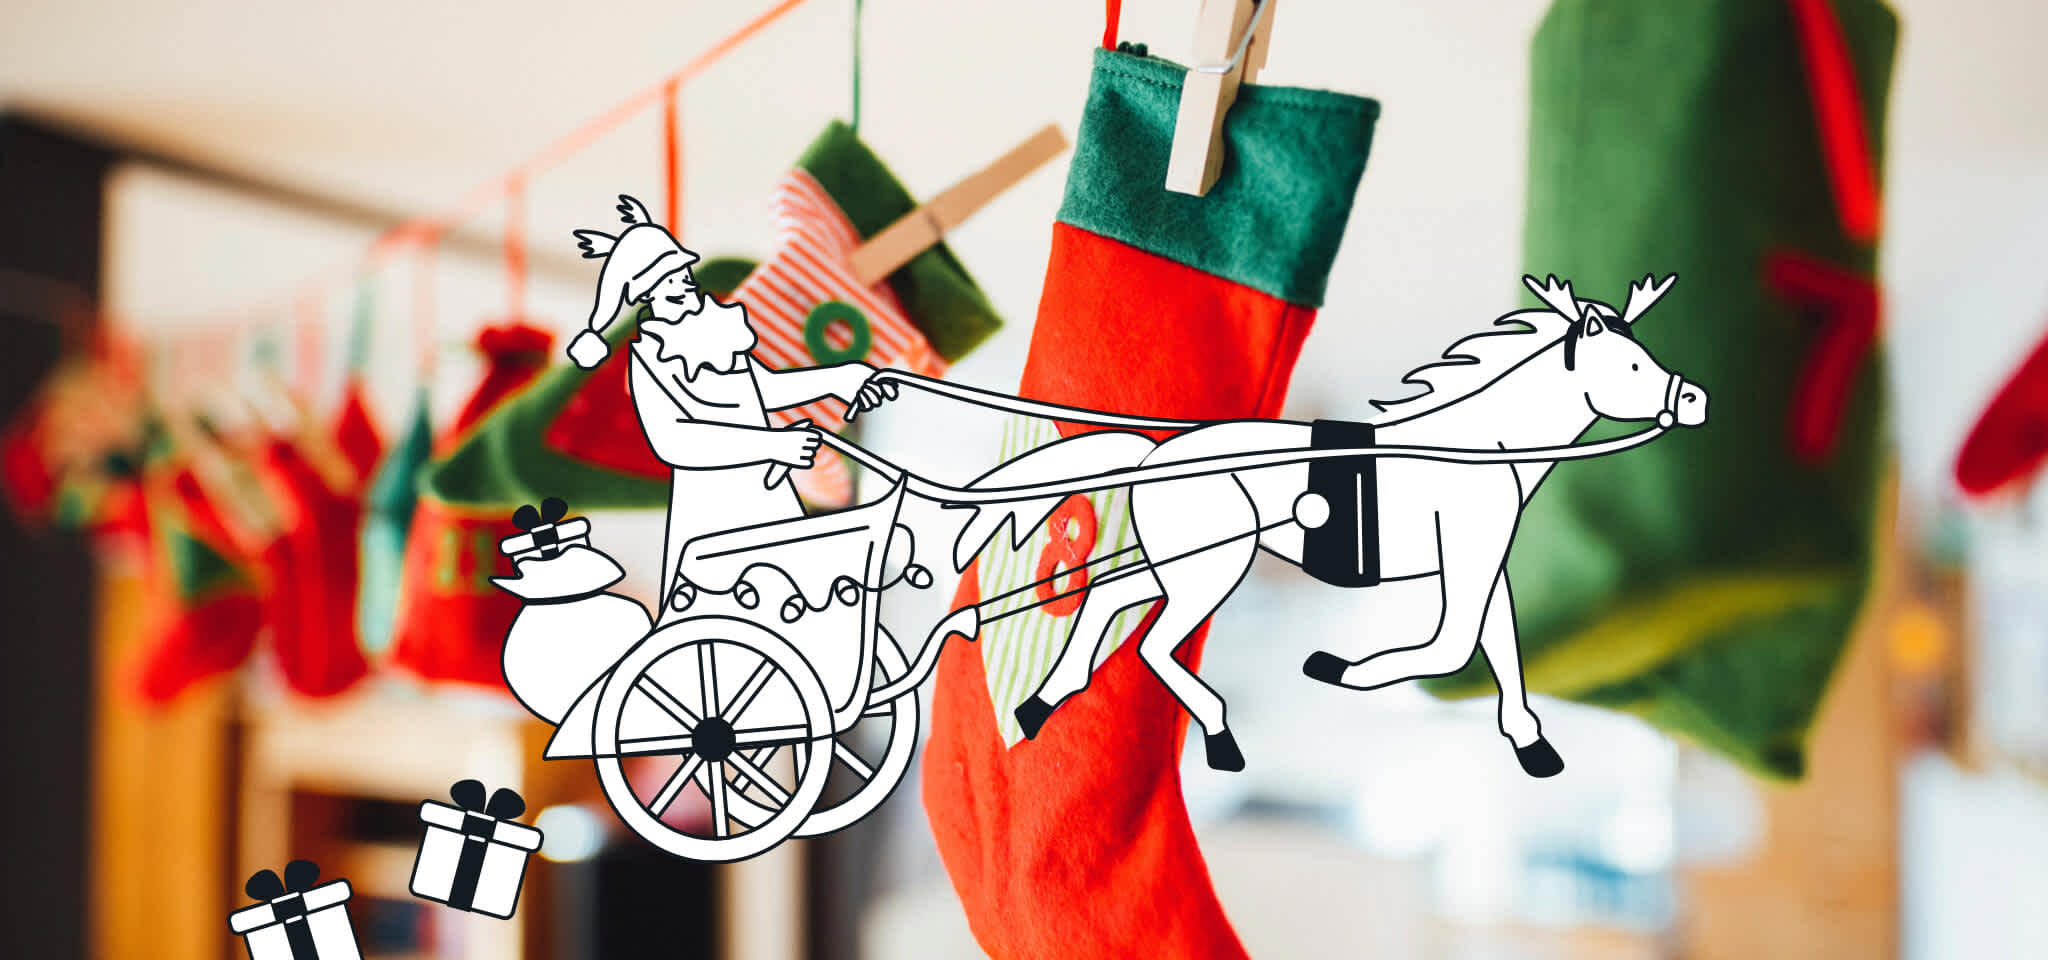 Hermes in Santa's sleigh in front of some socks